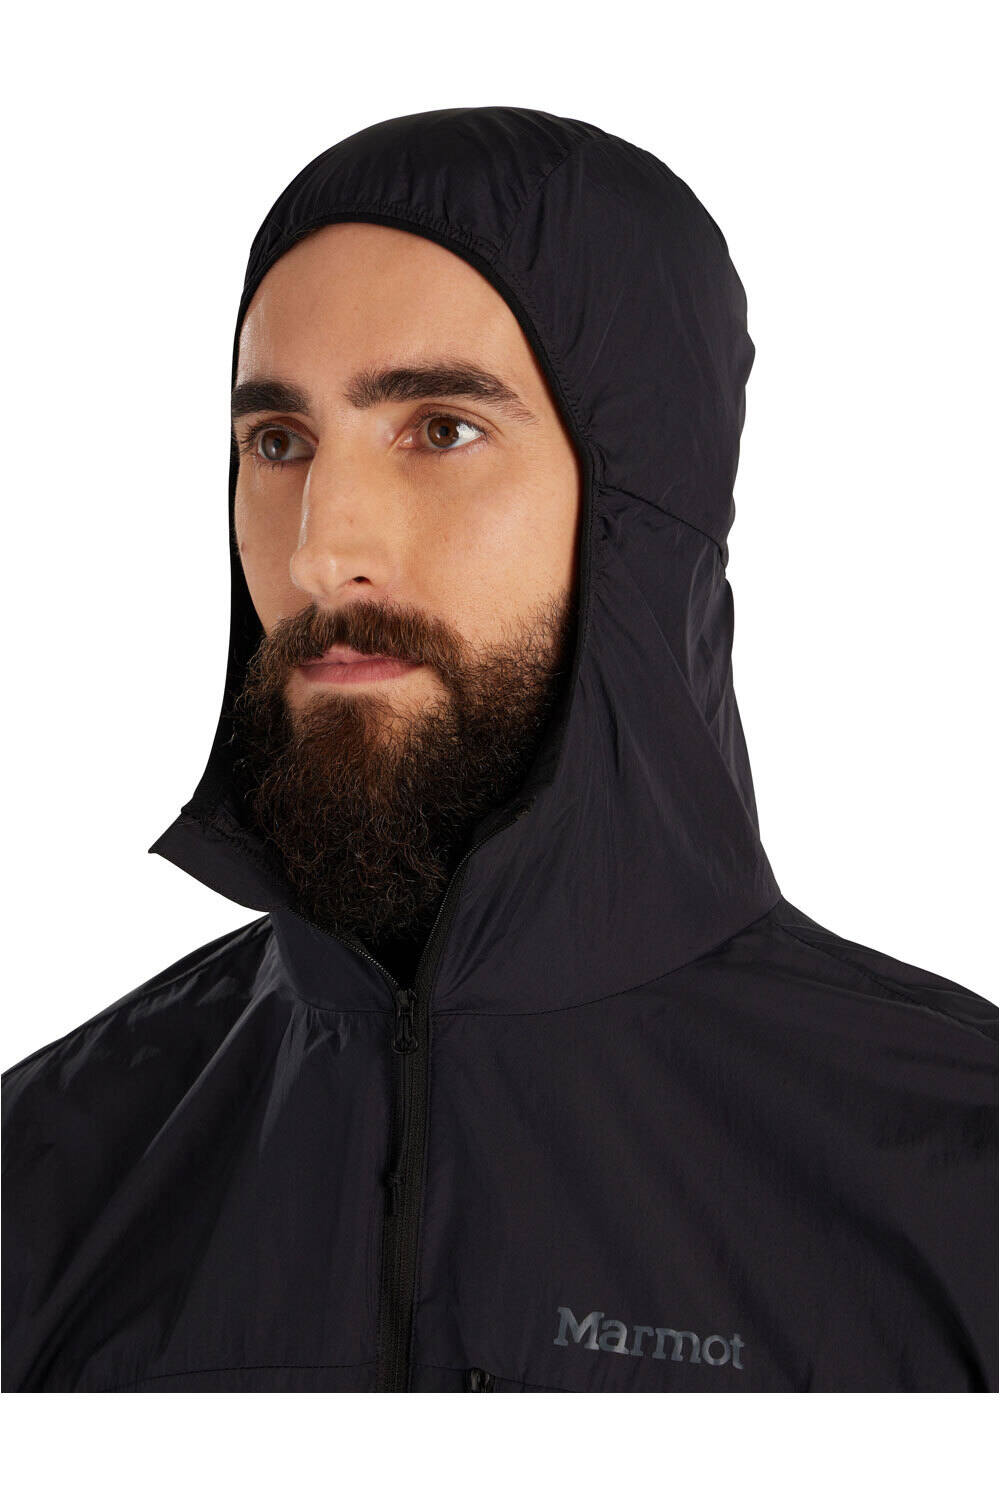 Marmot chaqueta softshell hombre Superalloy Bio Wind Jacket vista detalle